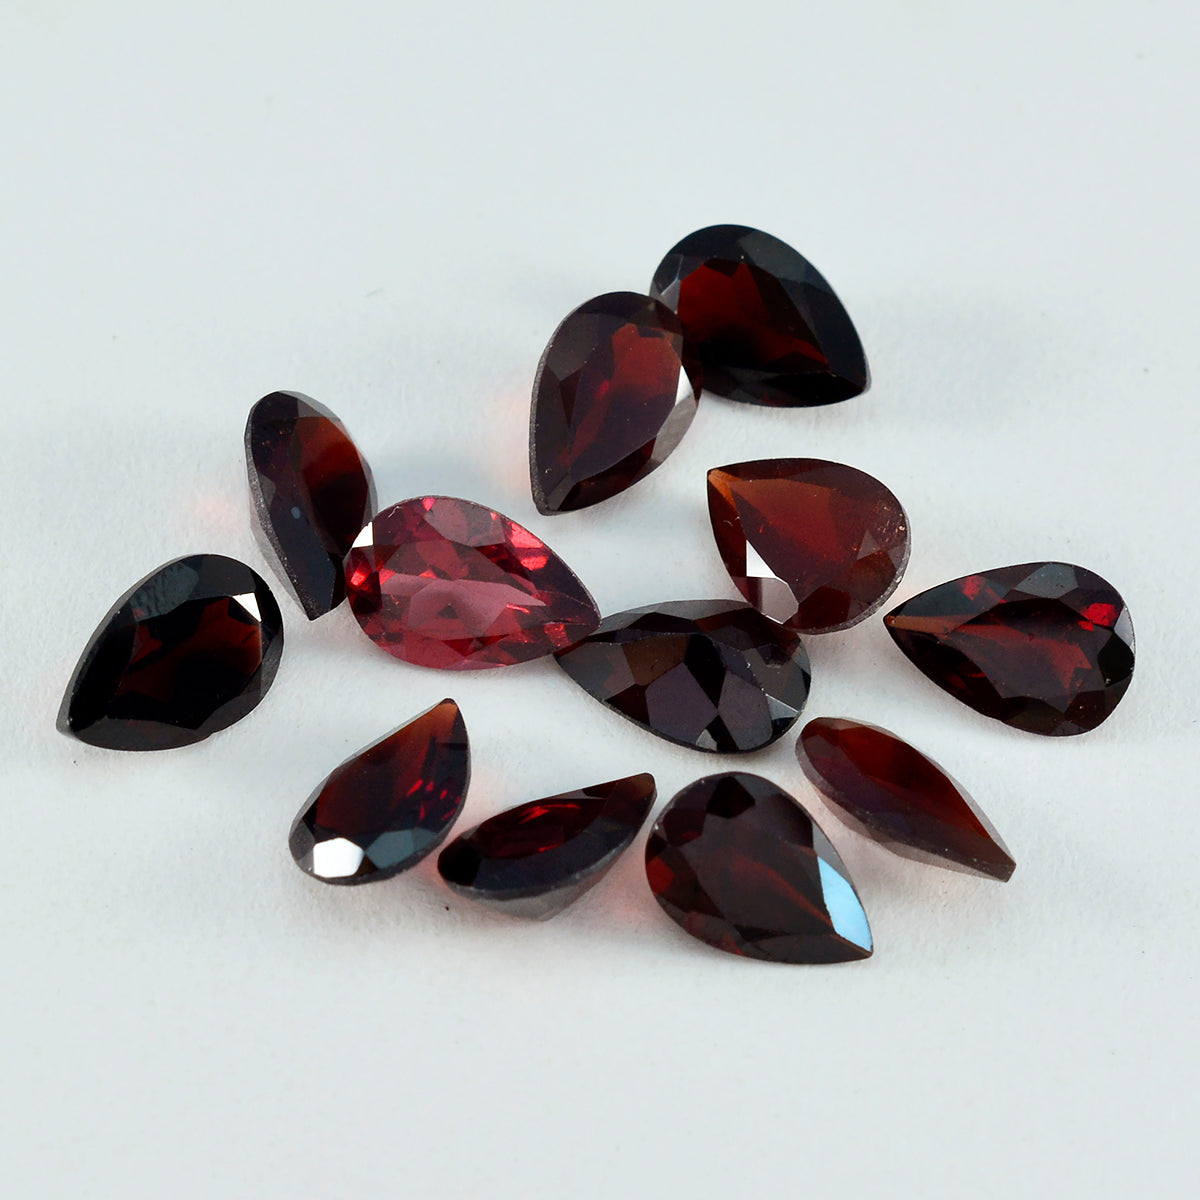 riyogems 1 шт. натуральный красный гранат ограненный 6x9 мм грушевидной формы, драгоценный камень удивительного качества